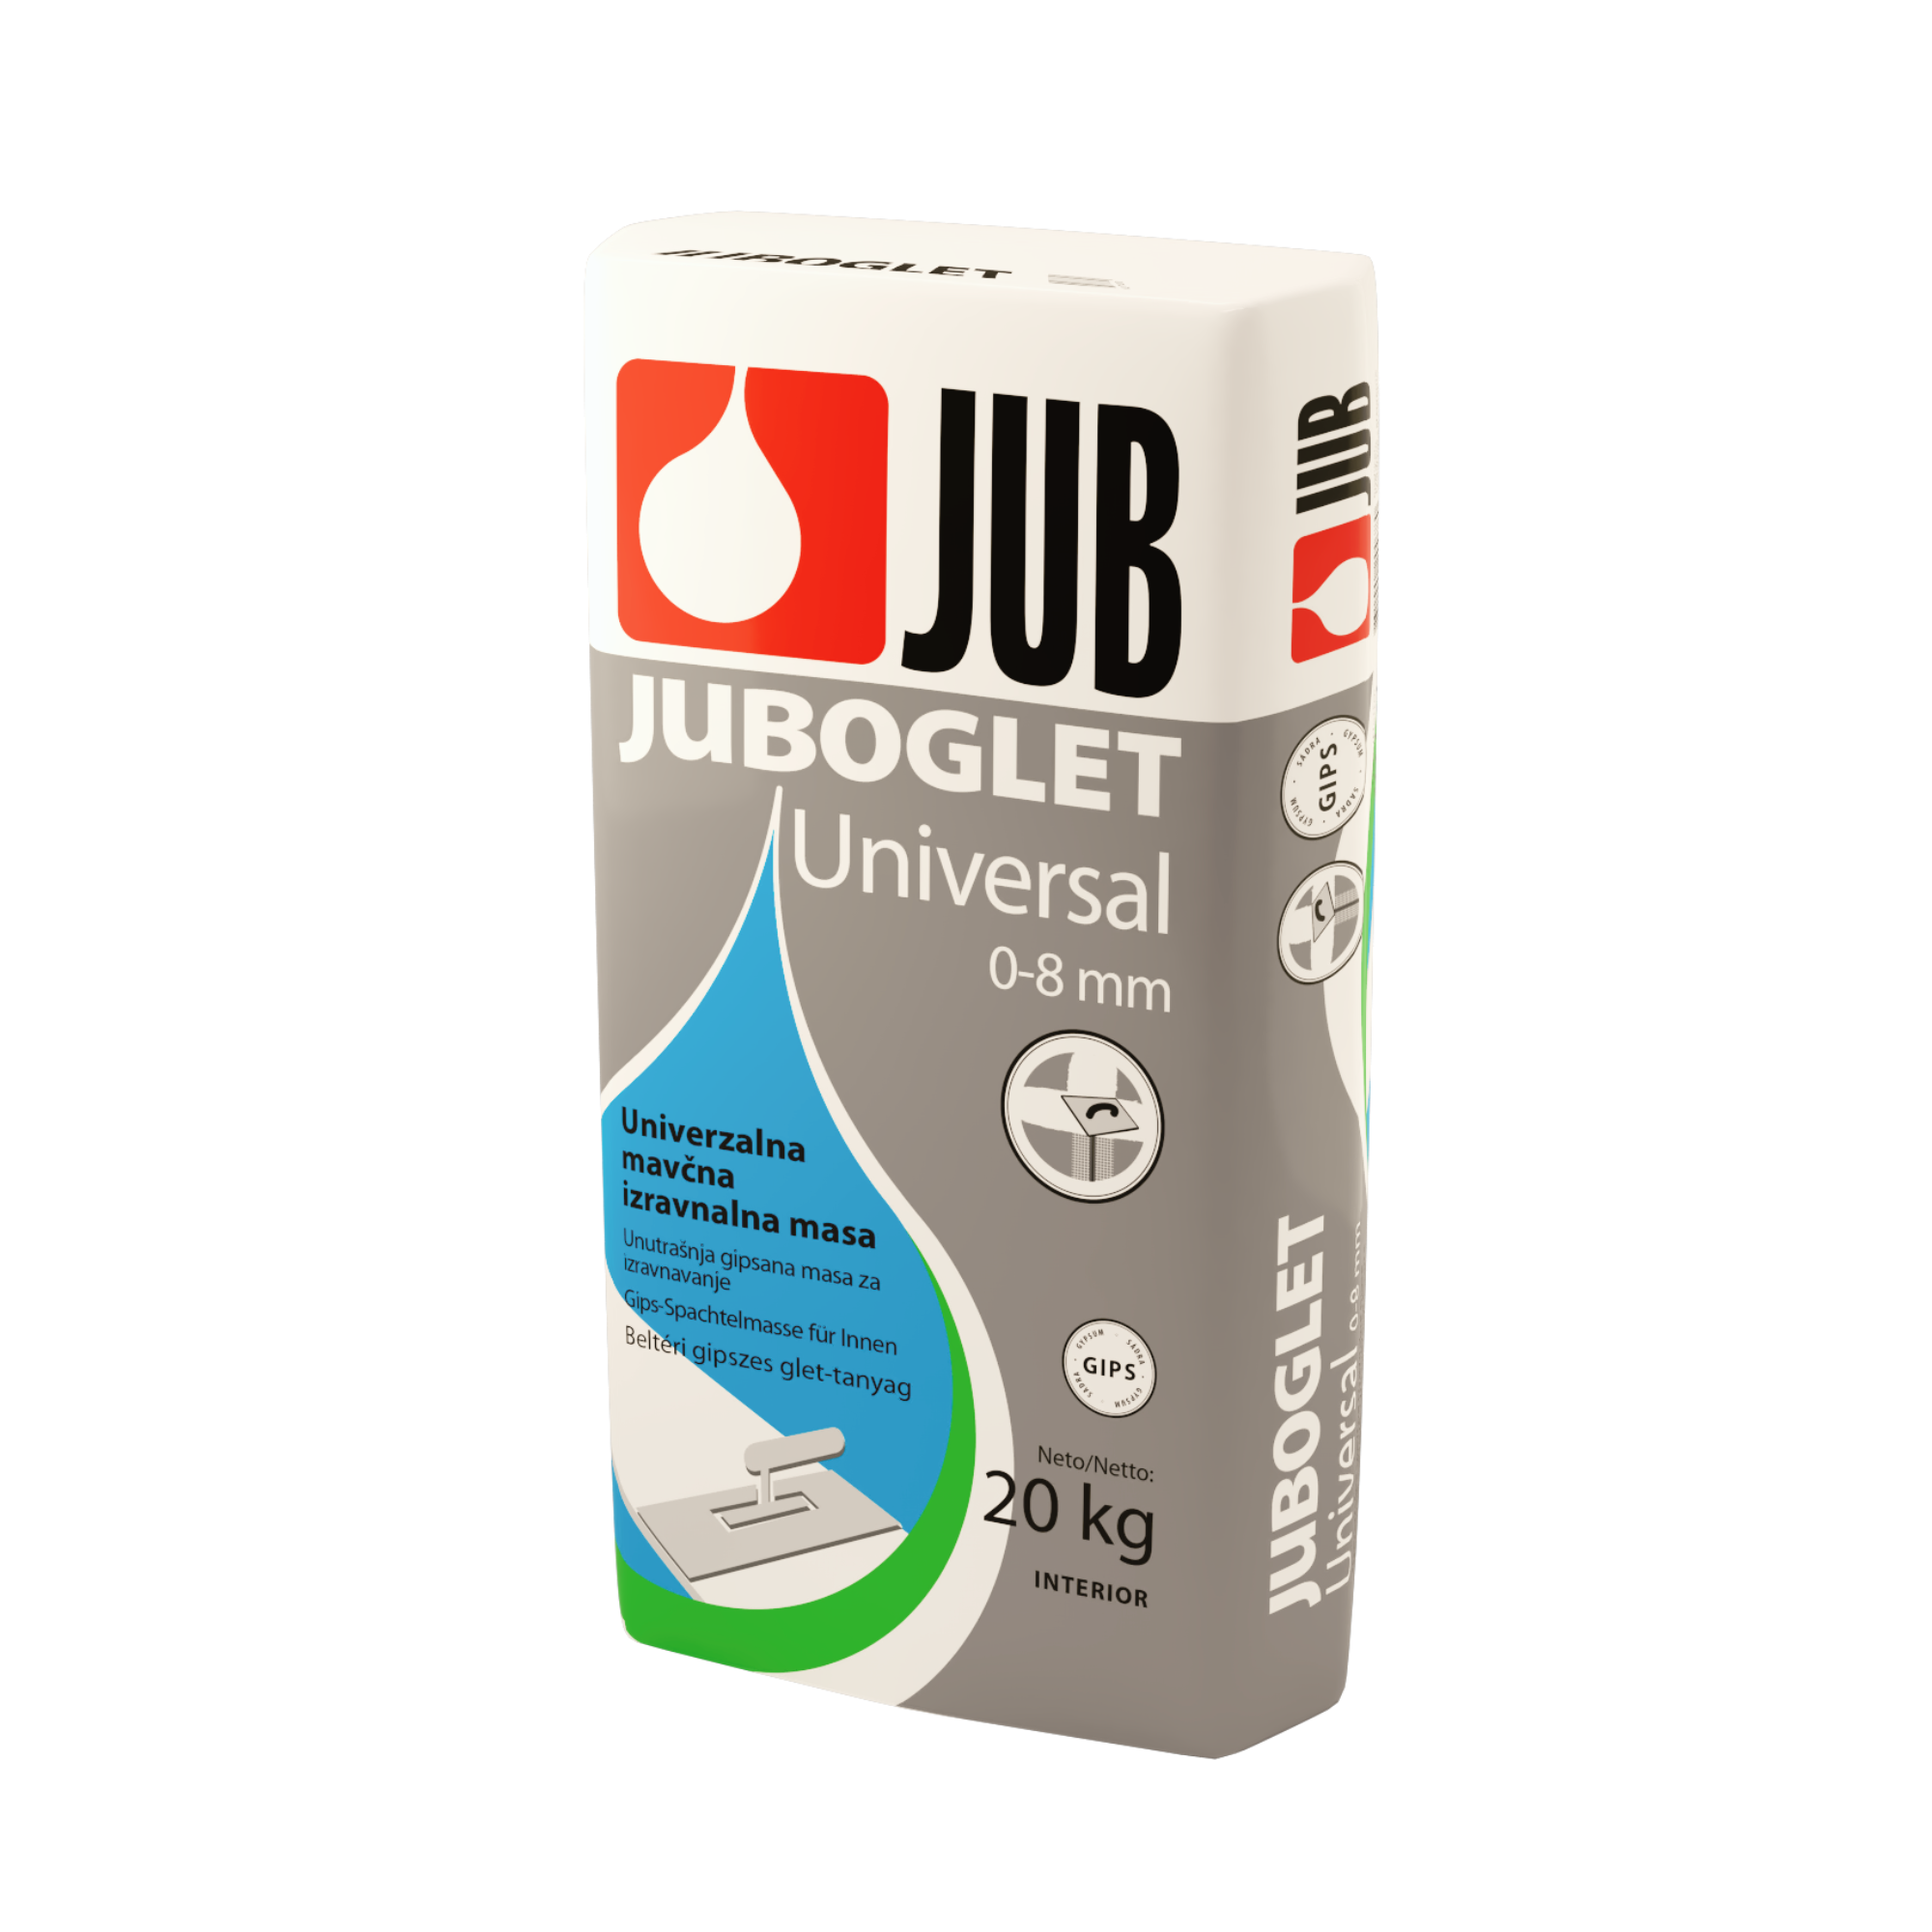 JUB JUBOGLET Universal 0-8 vnútorná prášková vyrovnávacia hmota